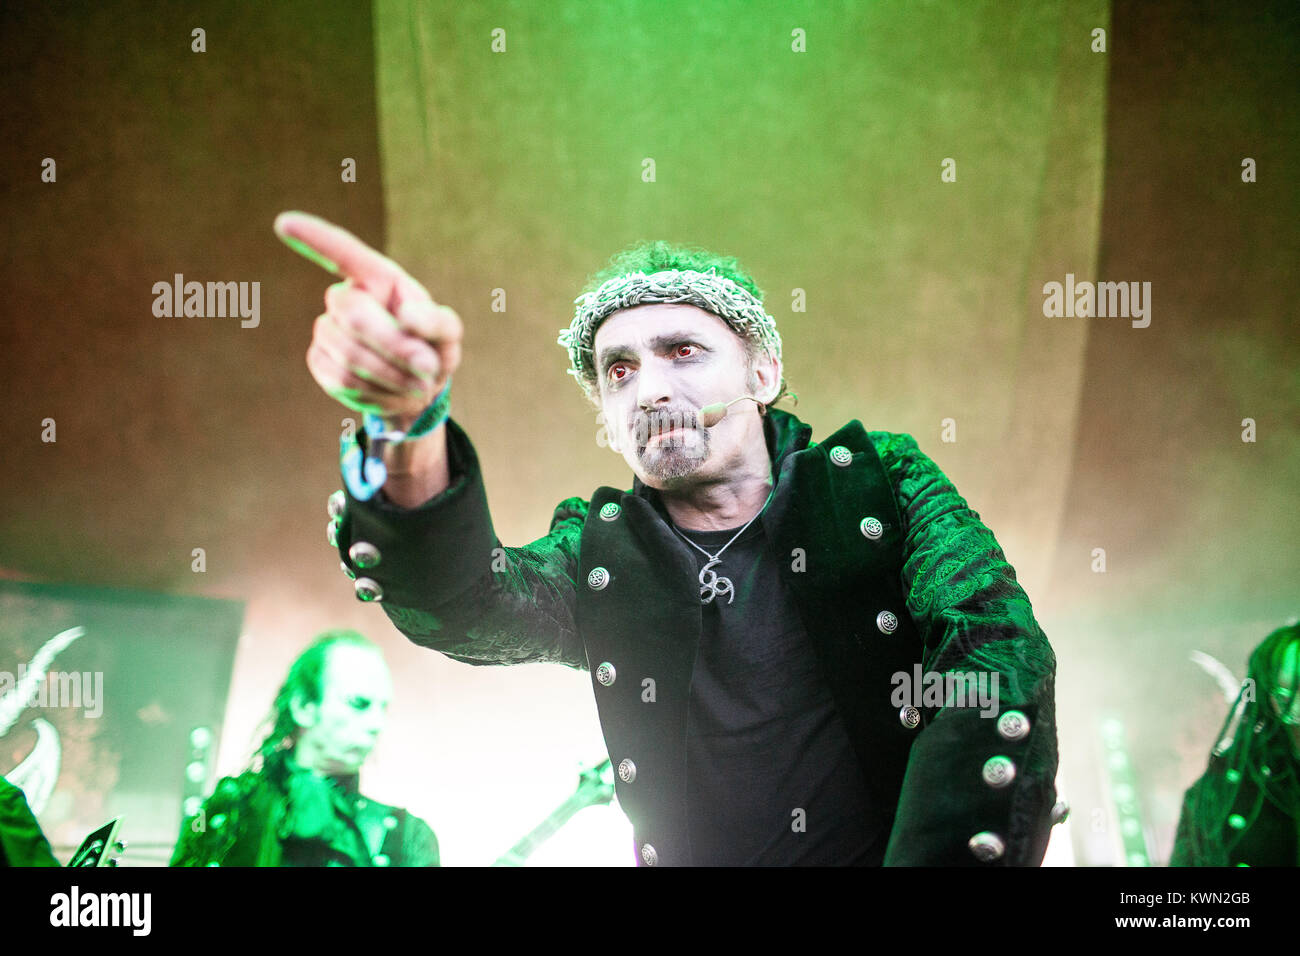 Die Englischen heavy metal band die Hölle führt ein Live Konzert in der barclaycard Theater Bühne am britischen Sommer Festival 2014 am Hyde Park, London. Hier Sänger David Bower wird dargestellt, live auf der Bühne. De 04.07.2014. Stockfoto